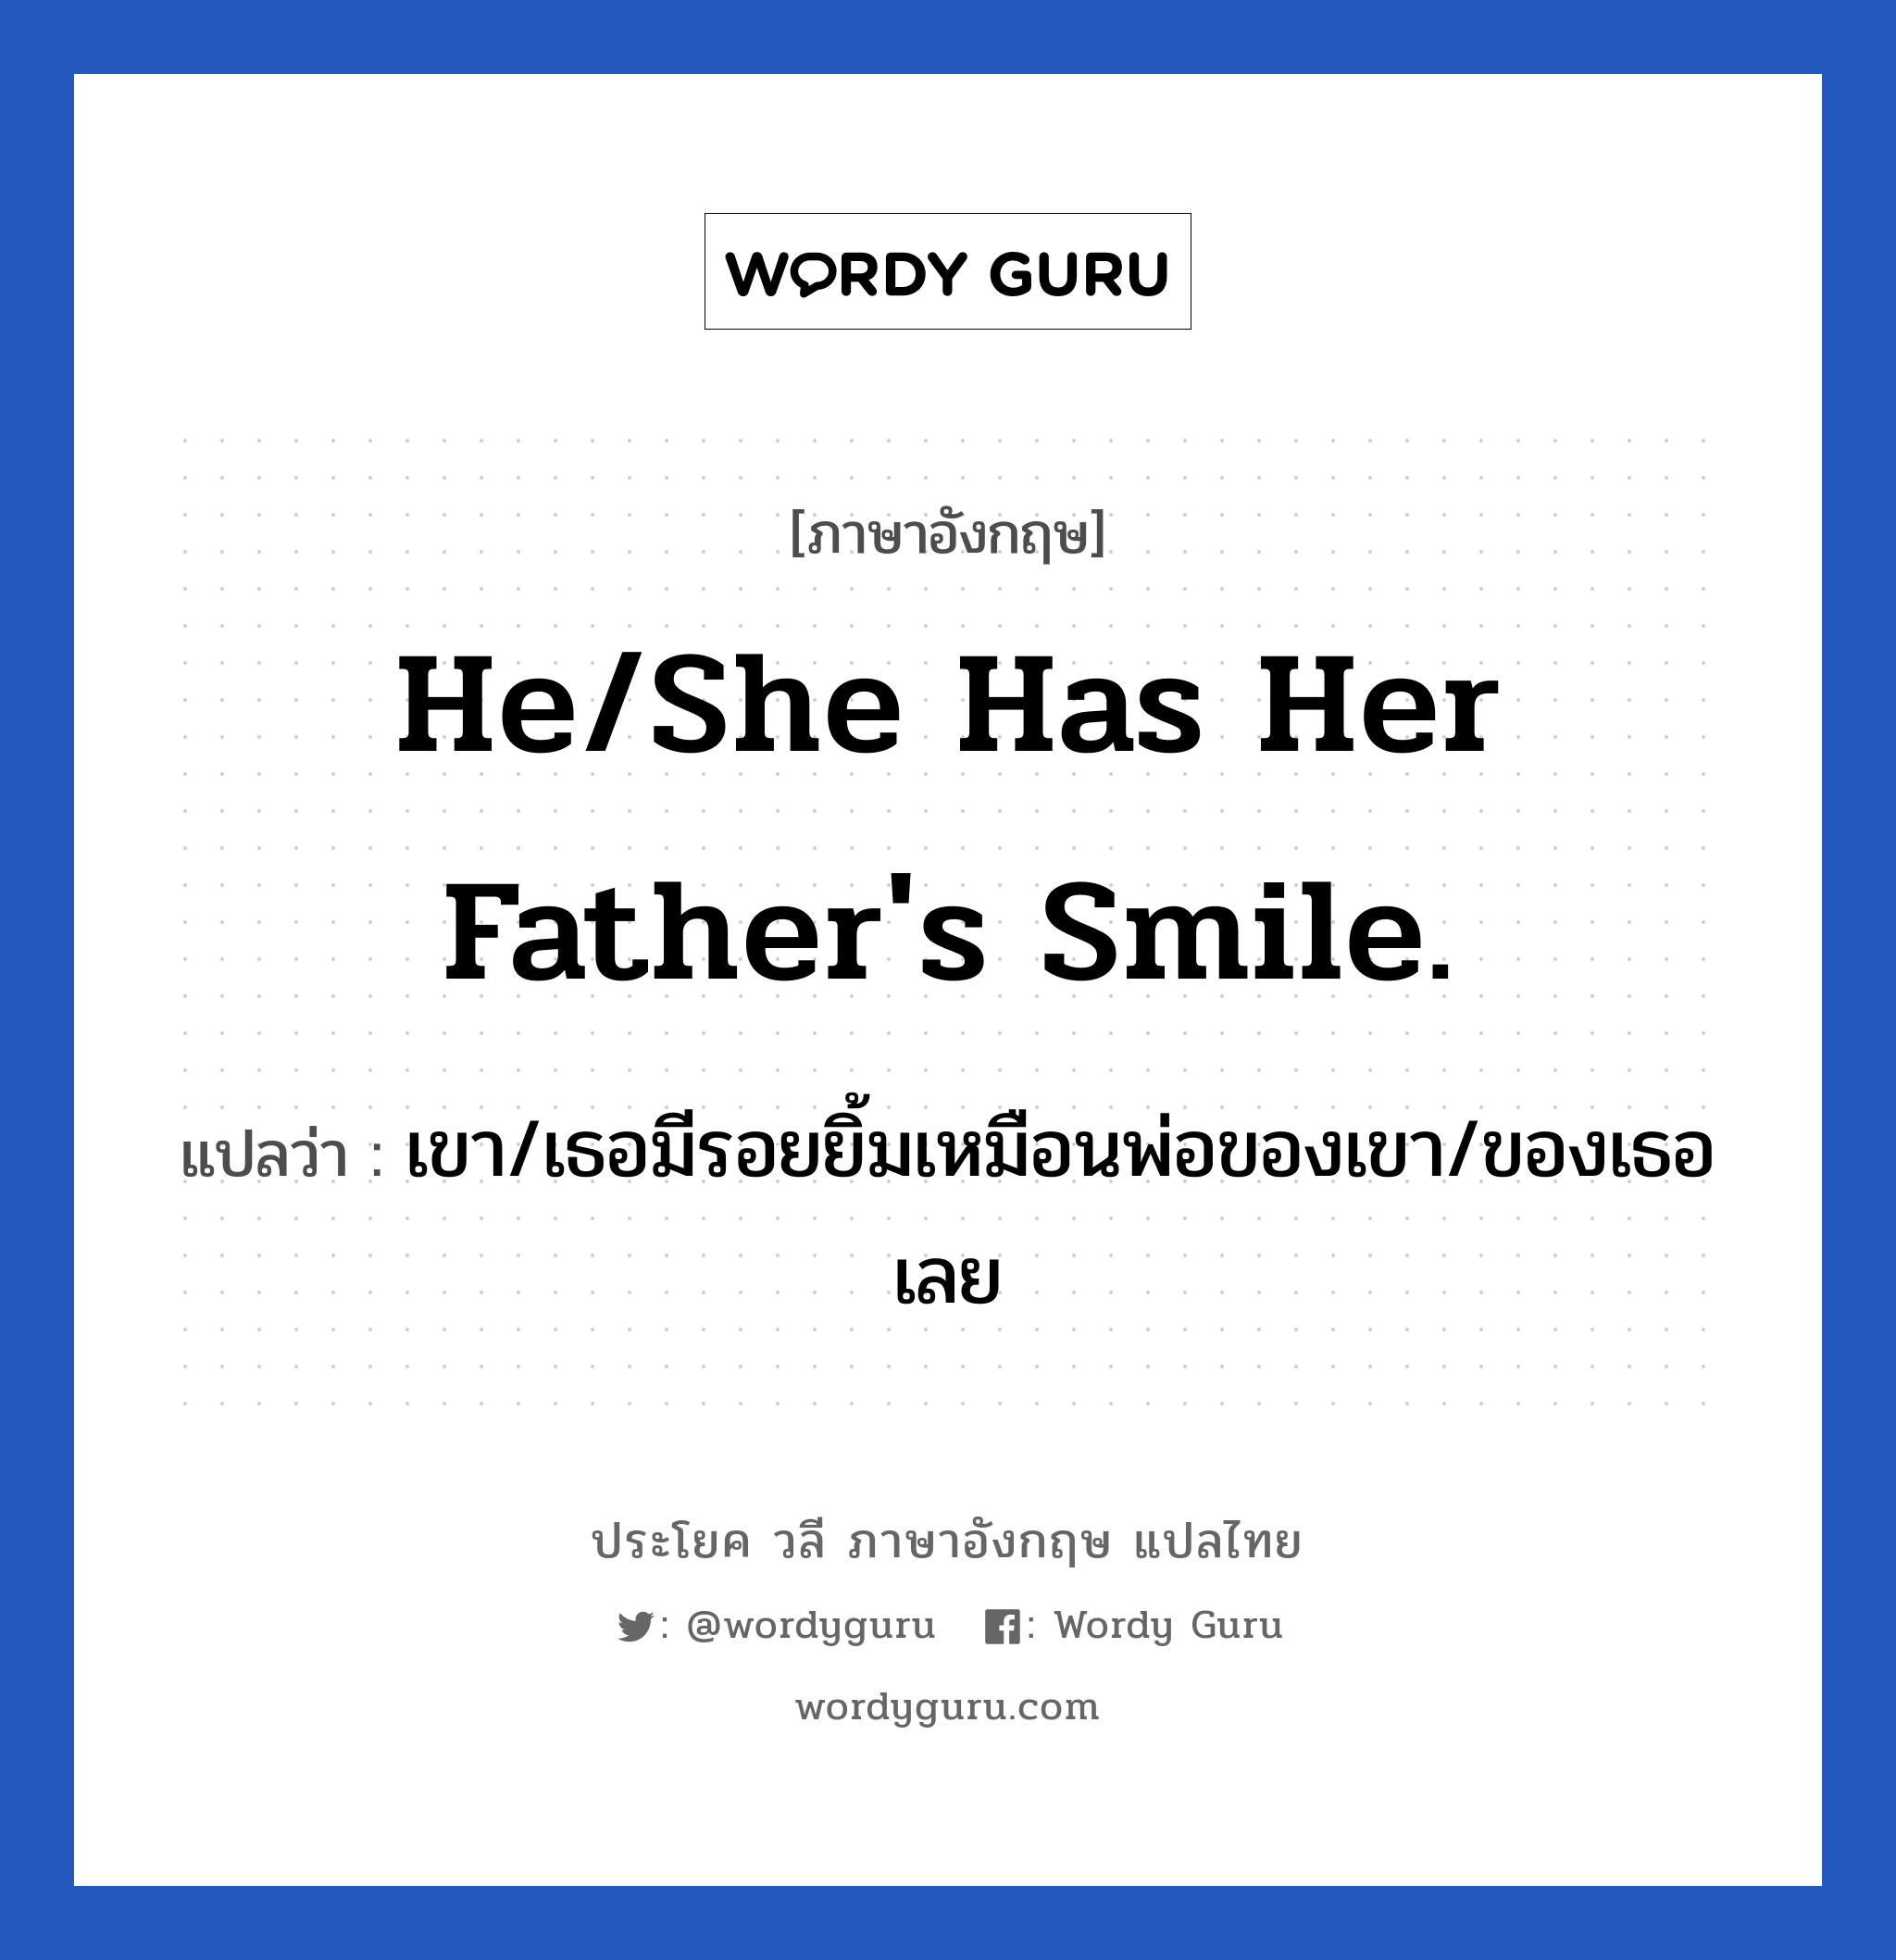 เขา/เธอมีรอยยิ้มเหมือนพ่อของเขา/ของเธอเลย ภาษาอังกฤษ?, วลีภาษาอังกฤษ เขา/เธอมีรอยยิ้มเหมือนพ่อของเขา/ของเธอเลย แปลว่า He/She has her father's smile.